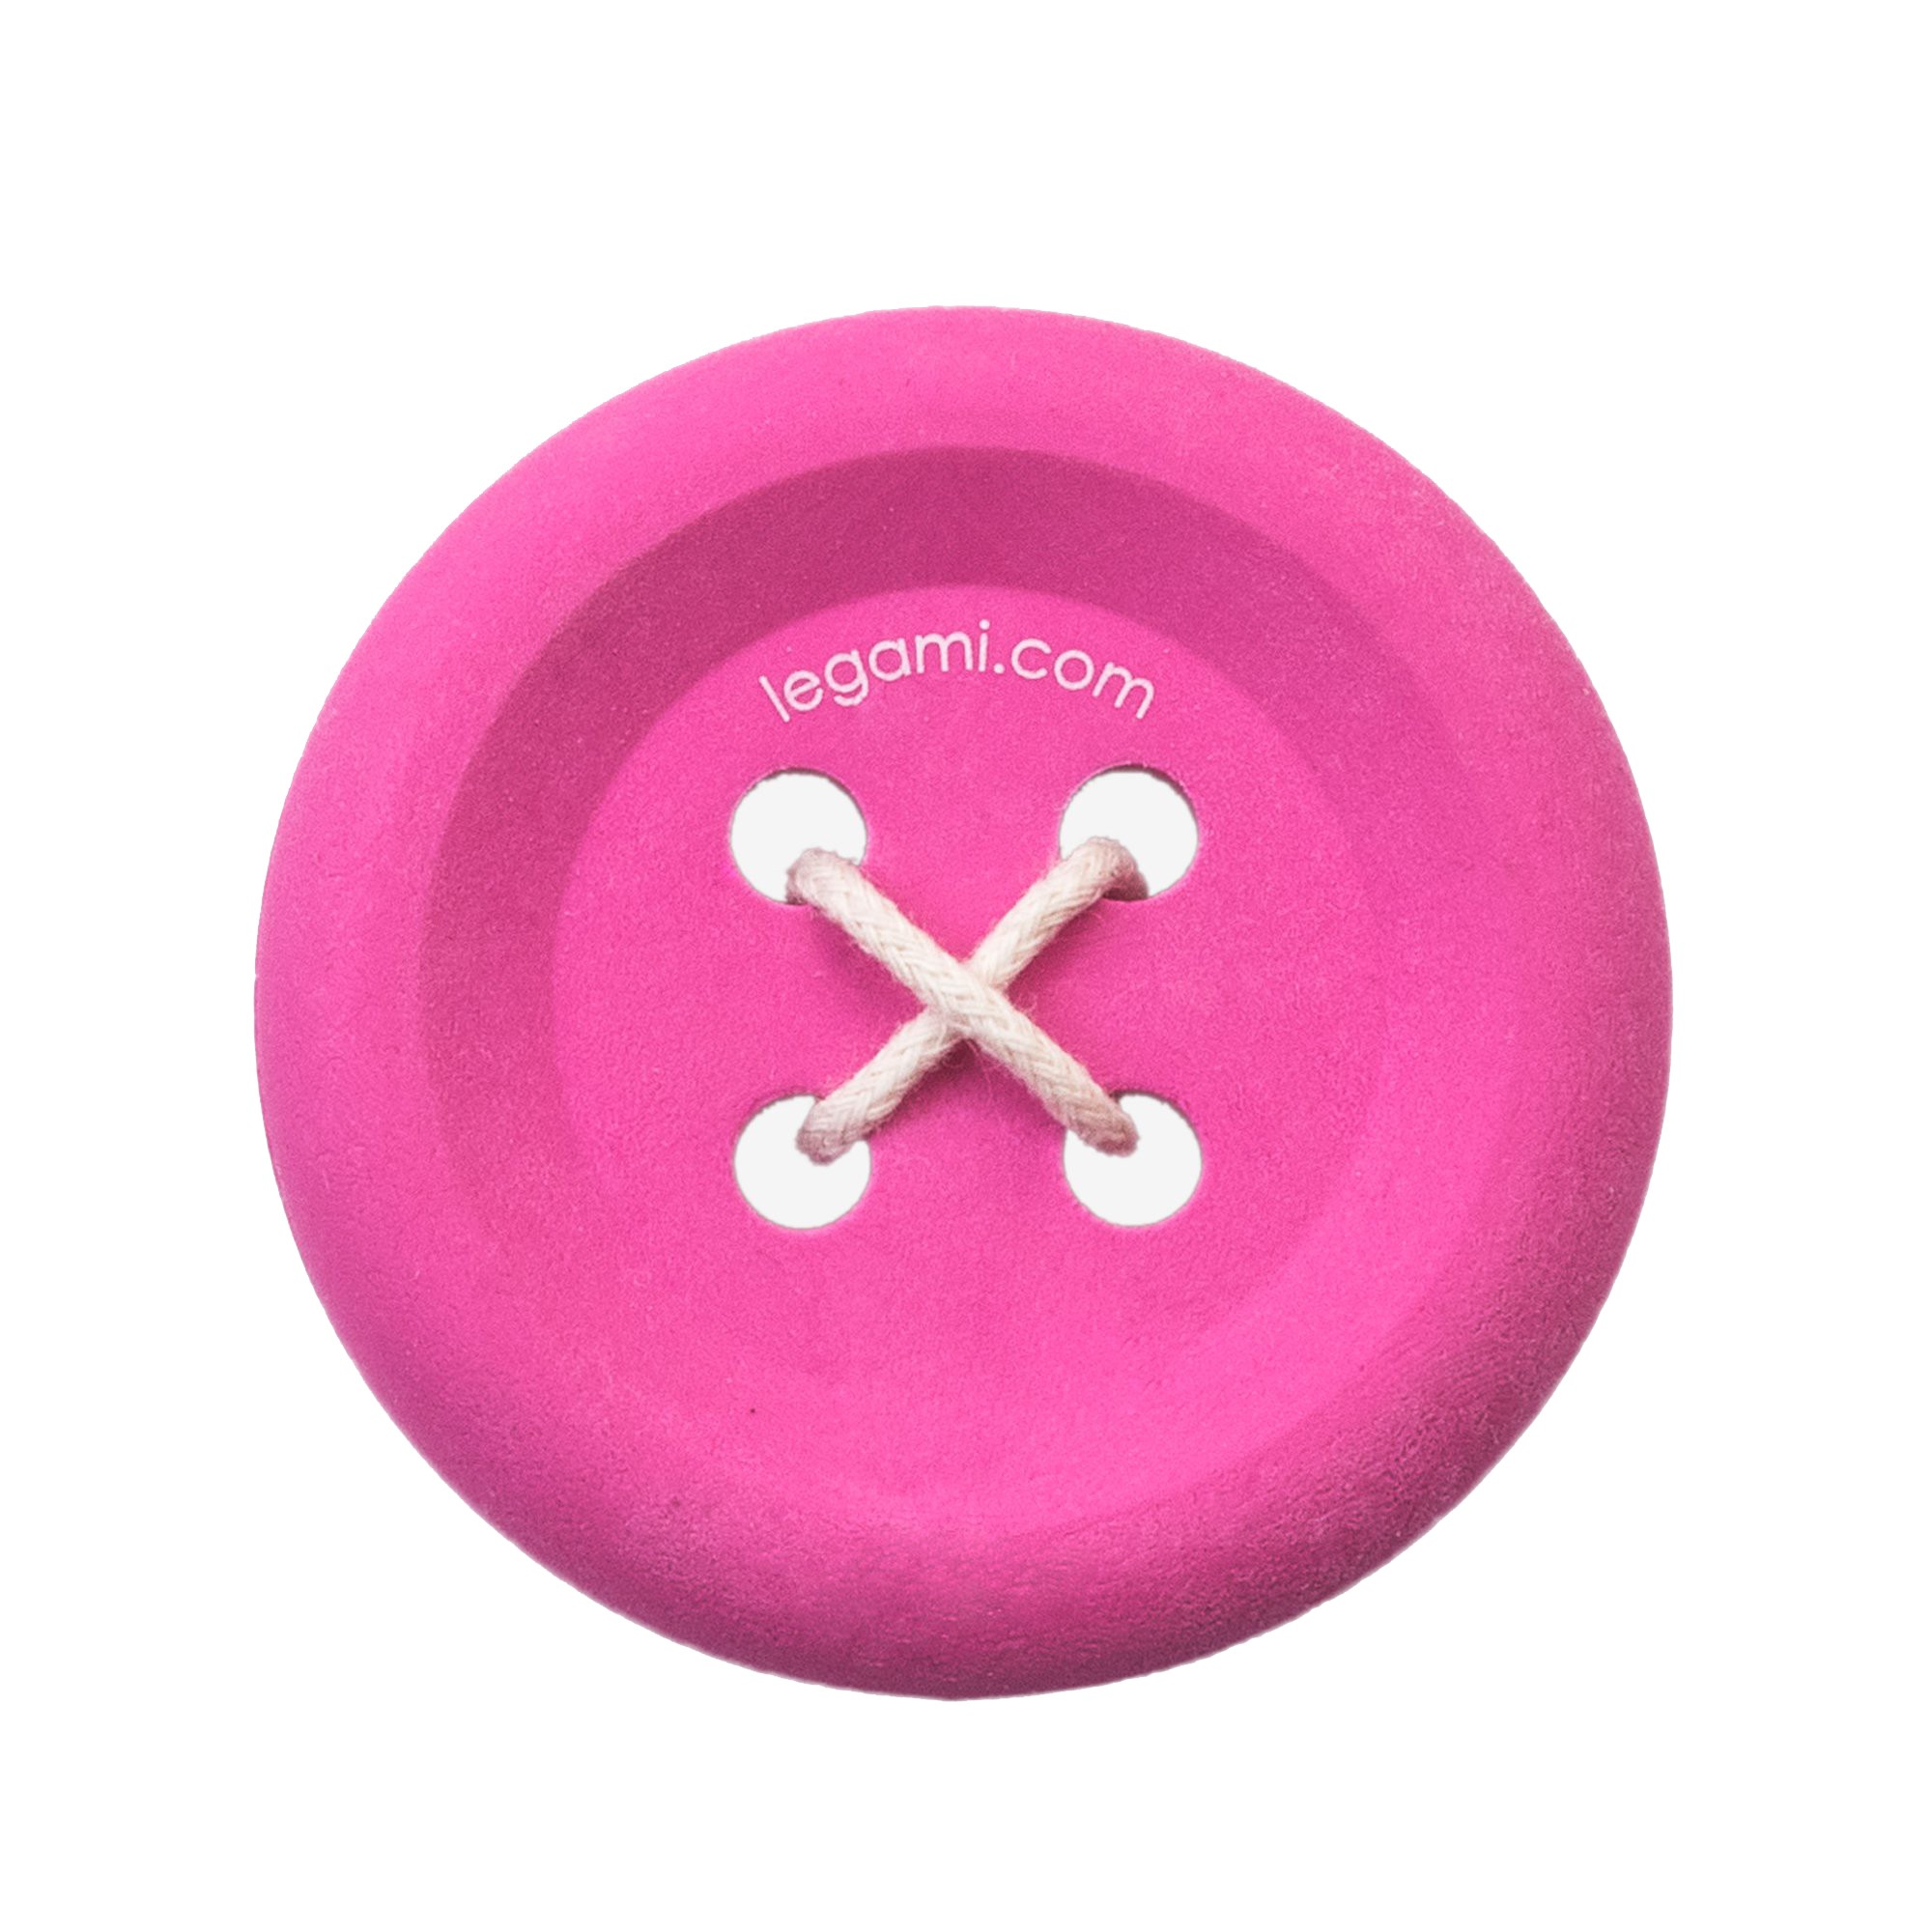 Gomma King of the Button Eraser colore Fuchsia forma di bottone